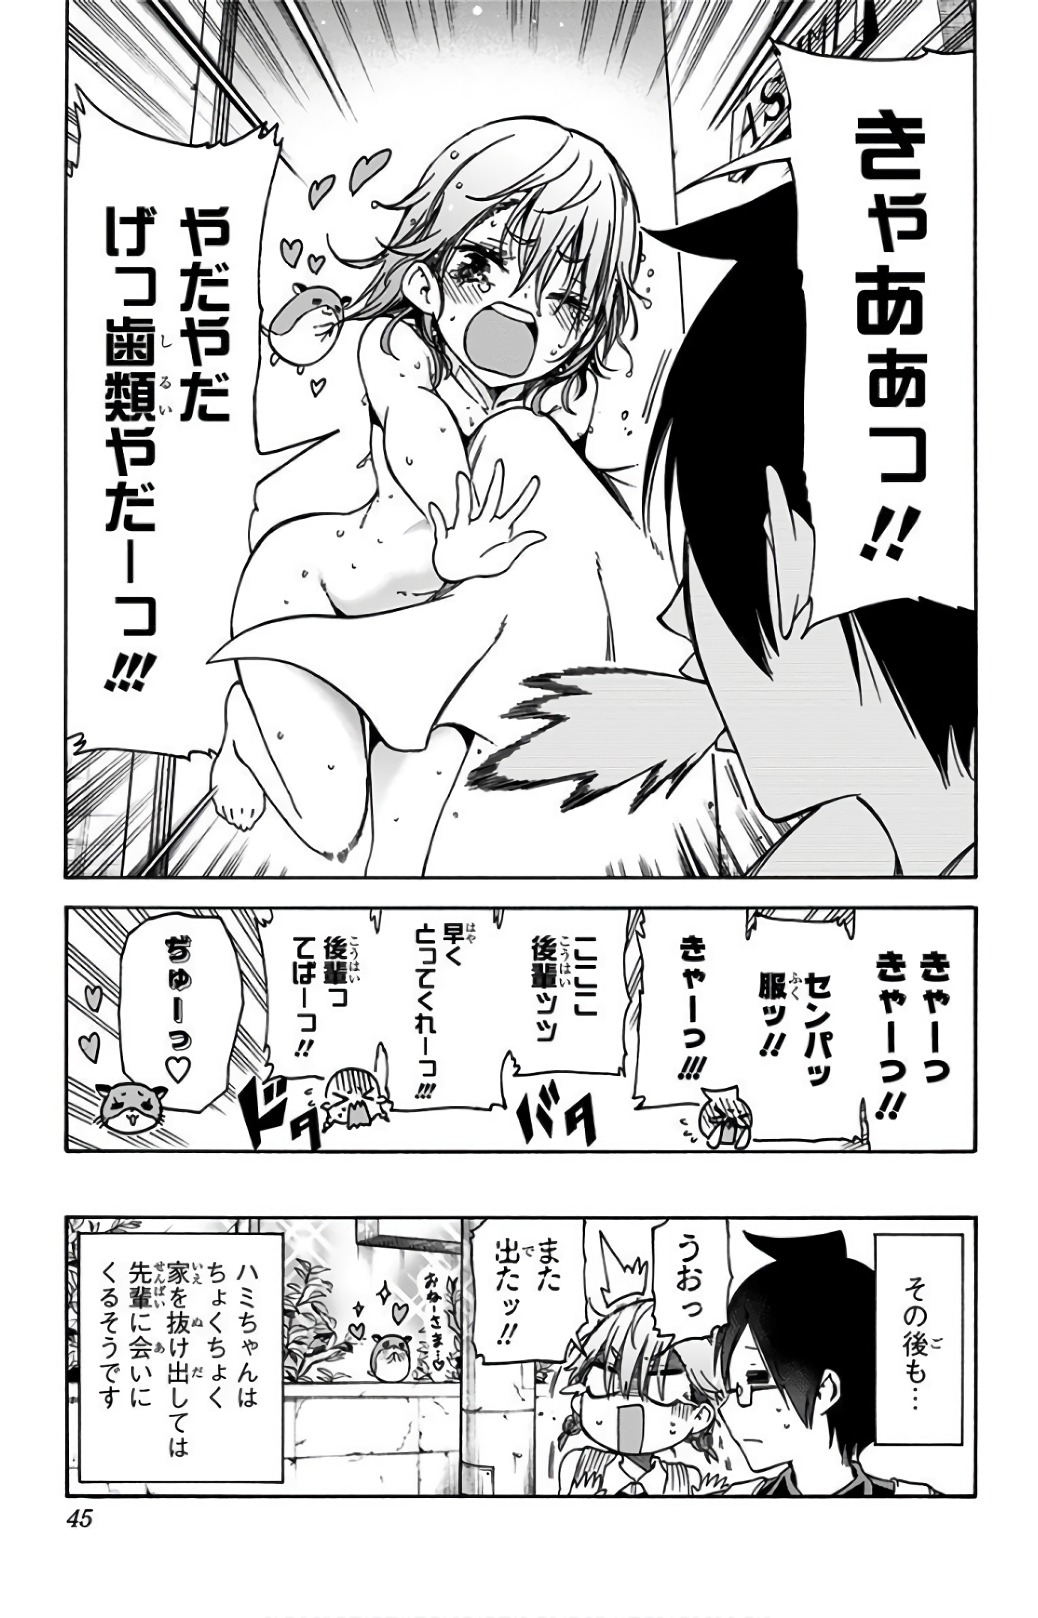 Bokutachi wa Benkyou ga Dekinai - Chapter 71 - Page 19